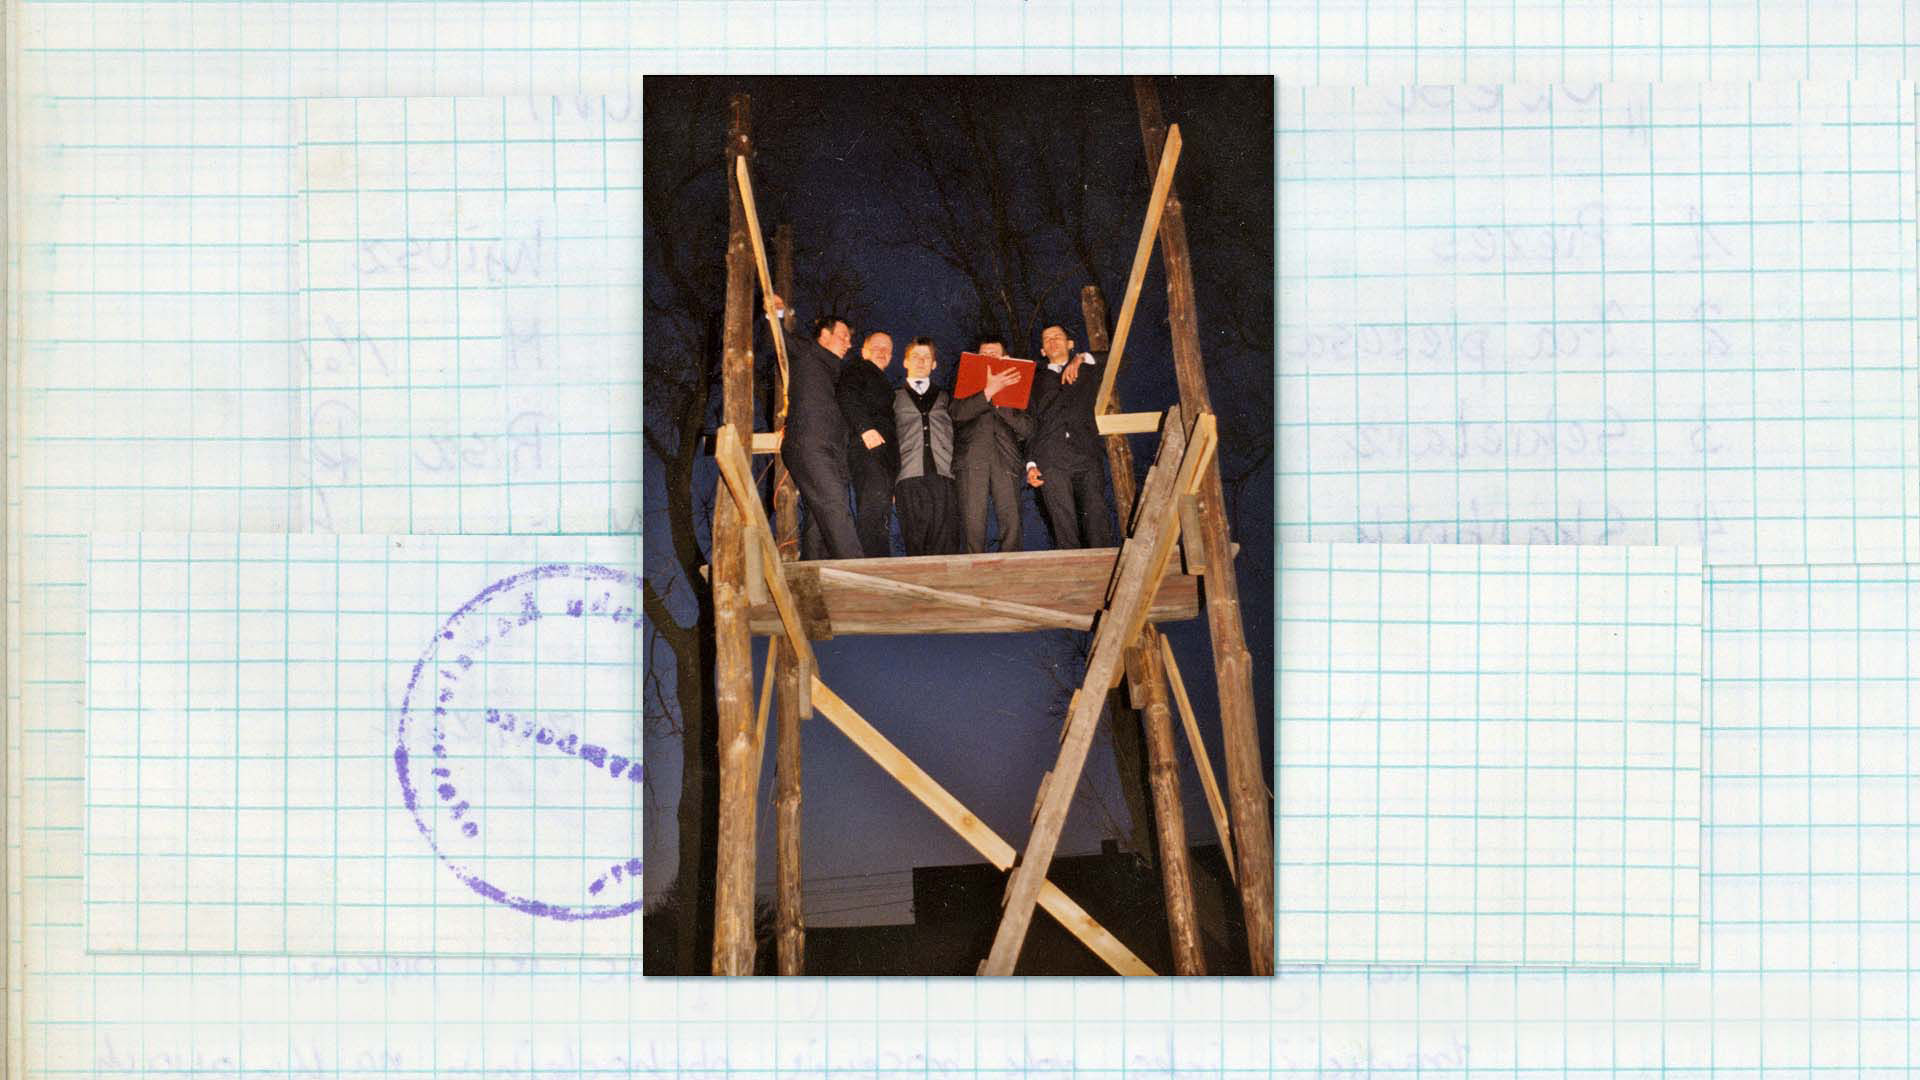 Wygłaszanie przywołówek, Niedziela Wielkanocna, ok. 2000 Fotografia w kolorze. Grupa elegancko ubranych mężczyzn stoi na drewnianej trybunie. Jeden z nich trzyma w swojej dłoni otwartą księgę w czerwonej obwolucie.